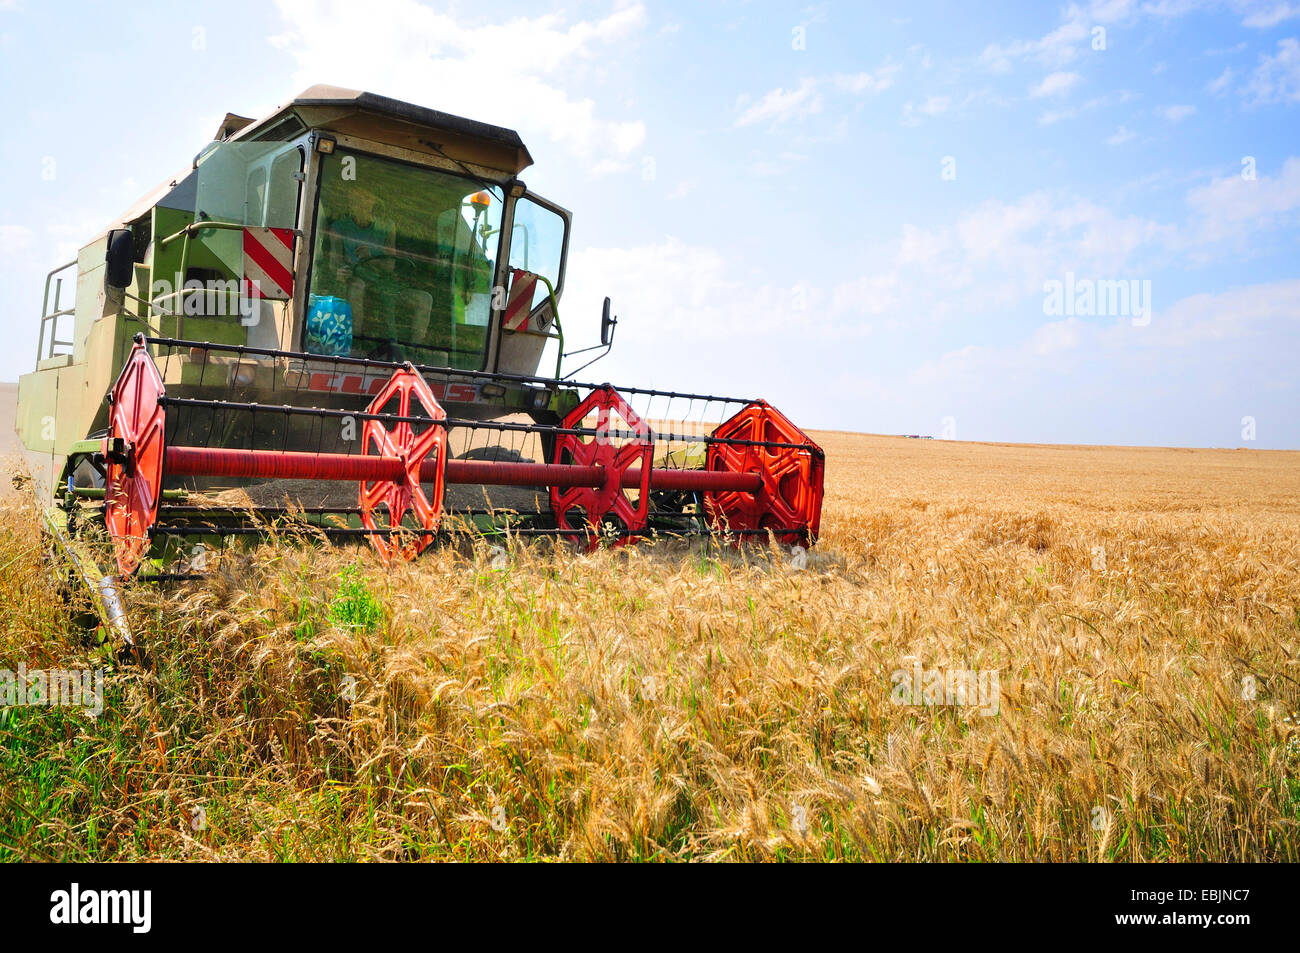 combine harvester in ripe grain field, France Stock Photo